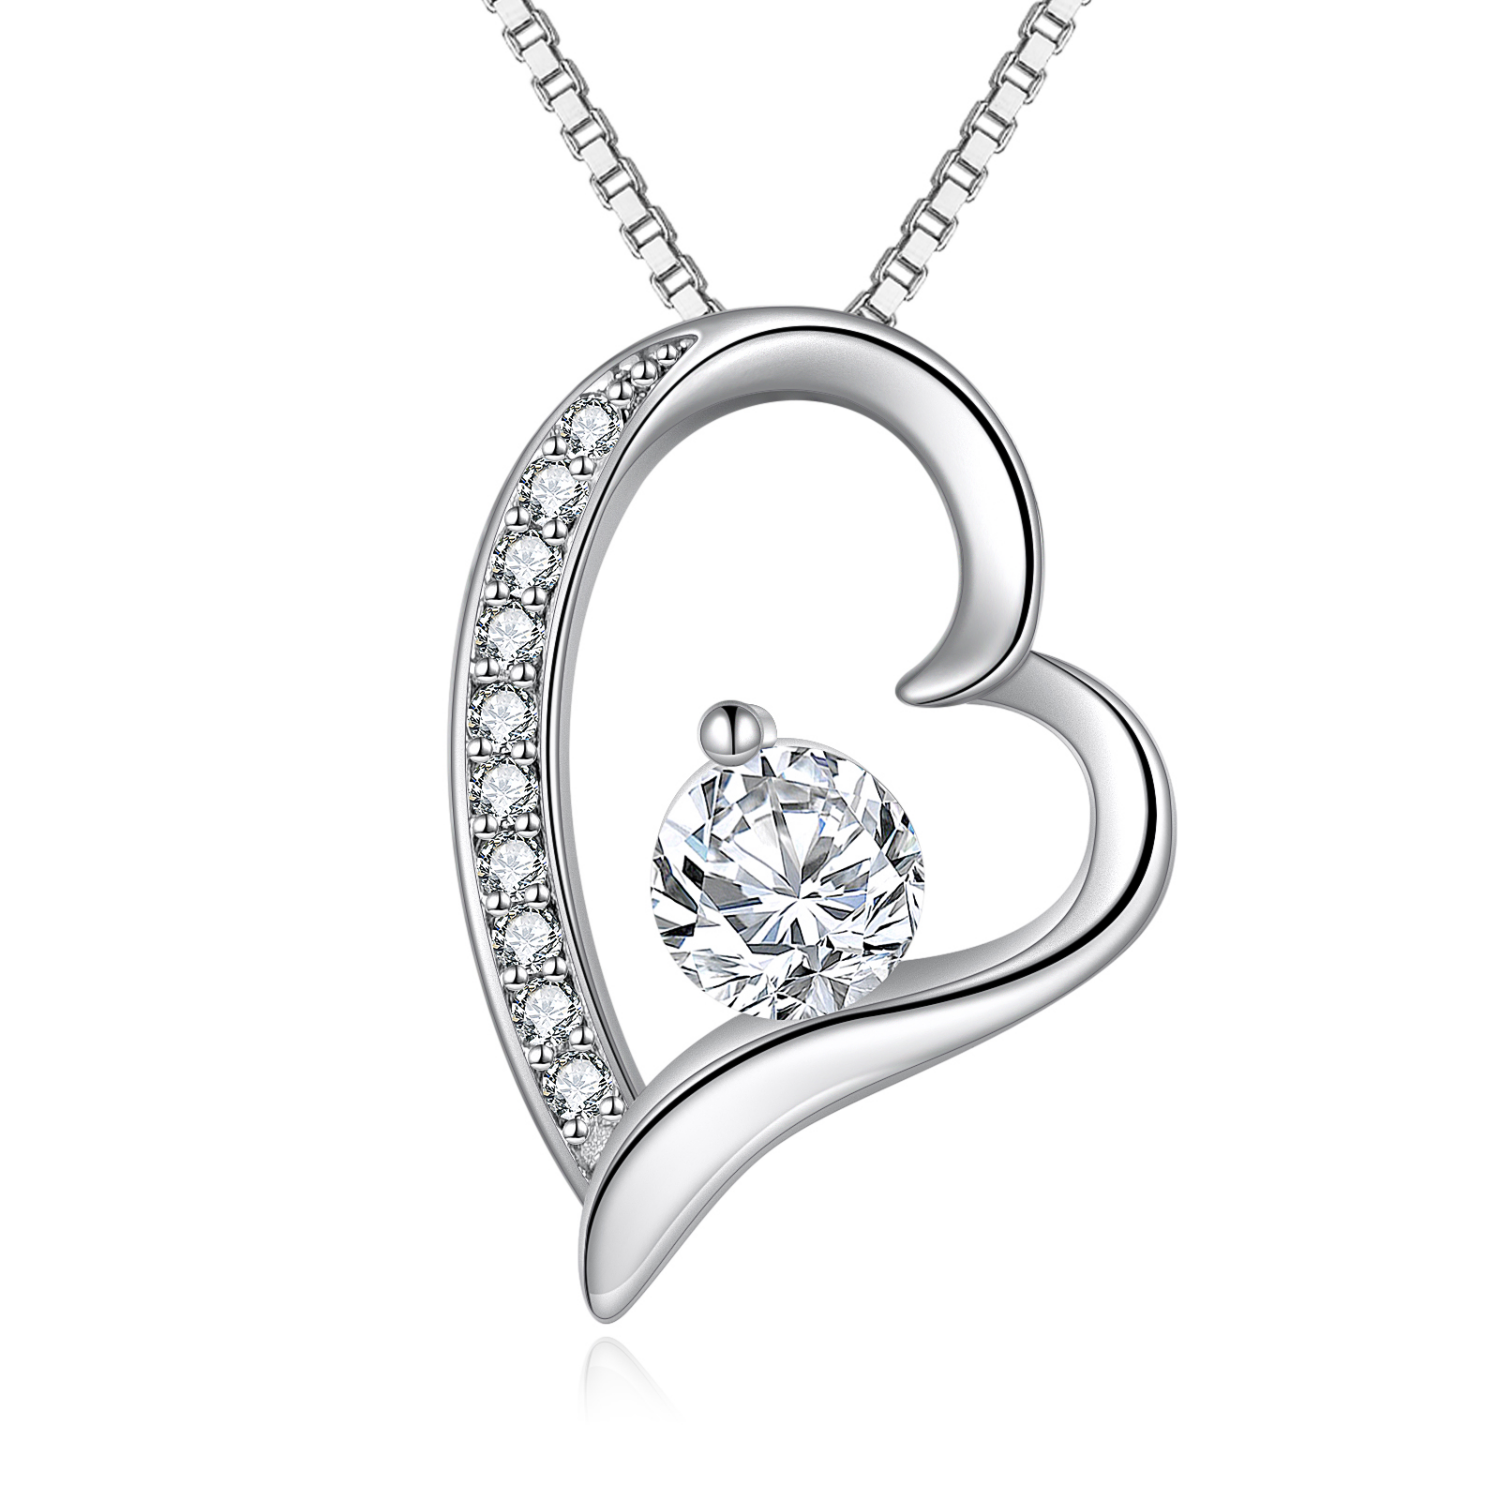 For My Girlfriend Heart Shaped Necklace - Mardonyx Jewelry